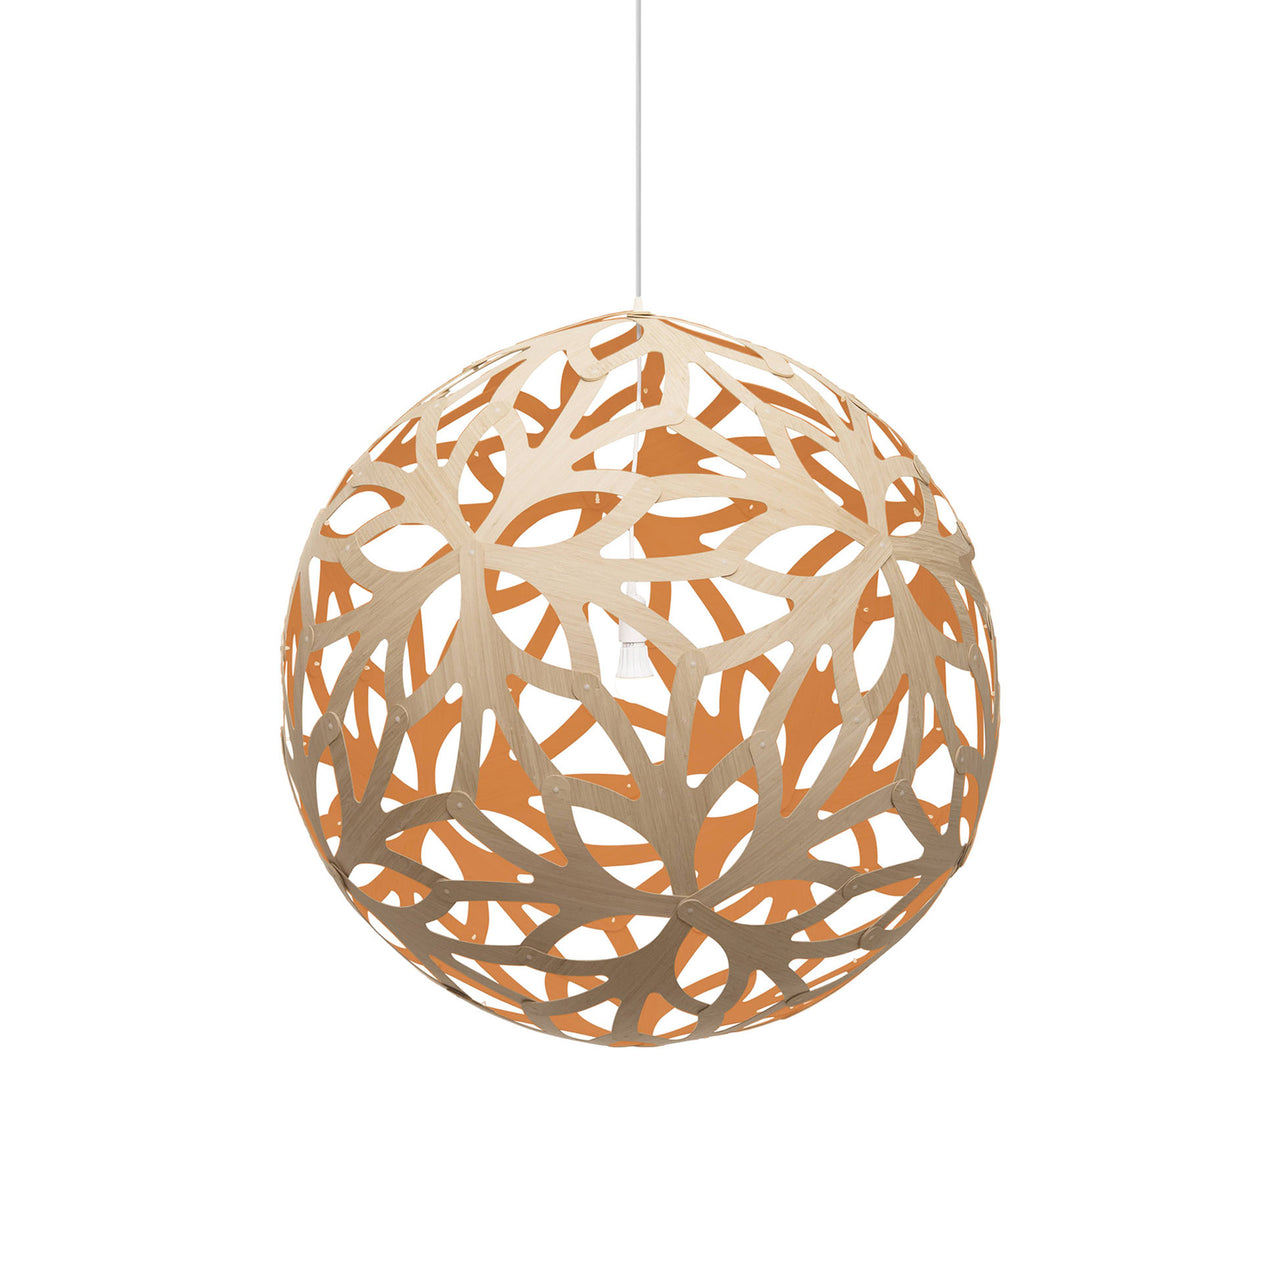 Floral Pendant Light: Extra Large + Bamboo + Orange + White